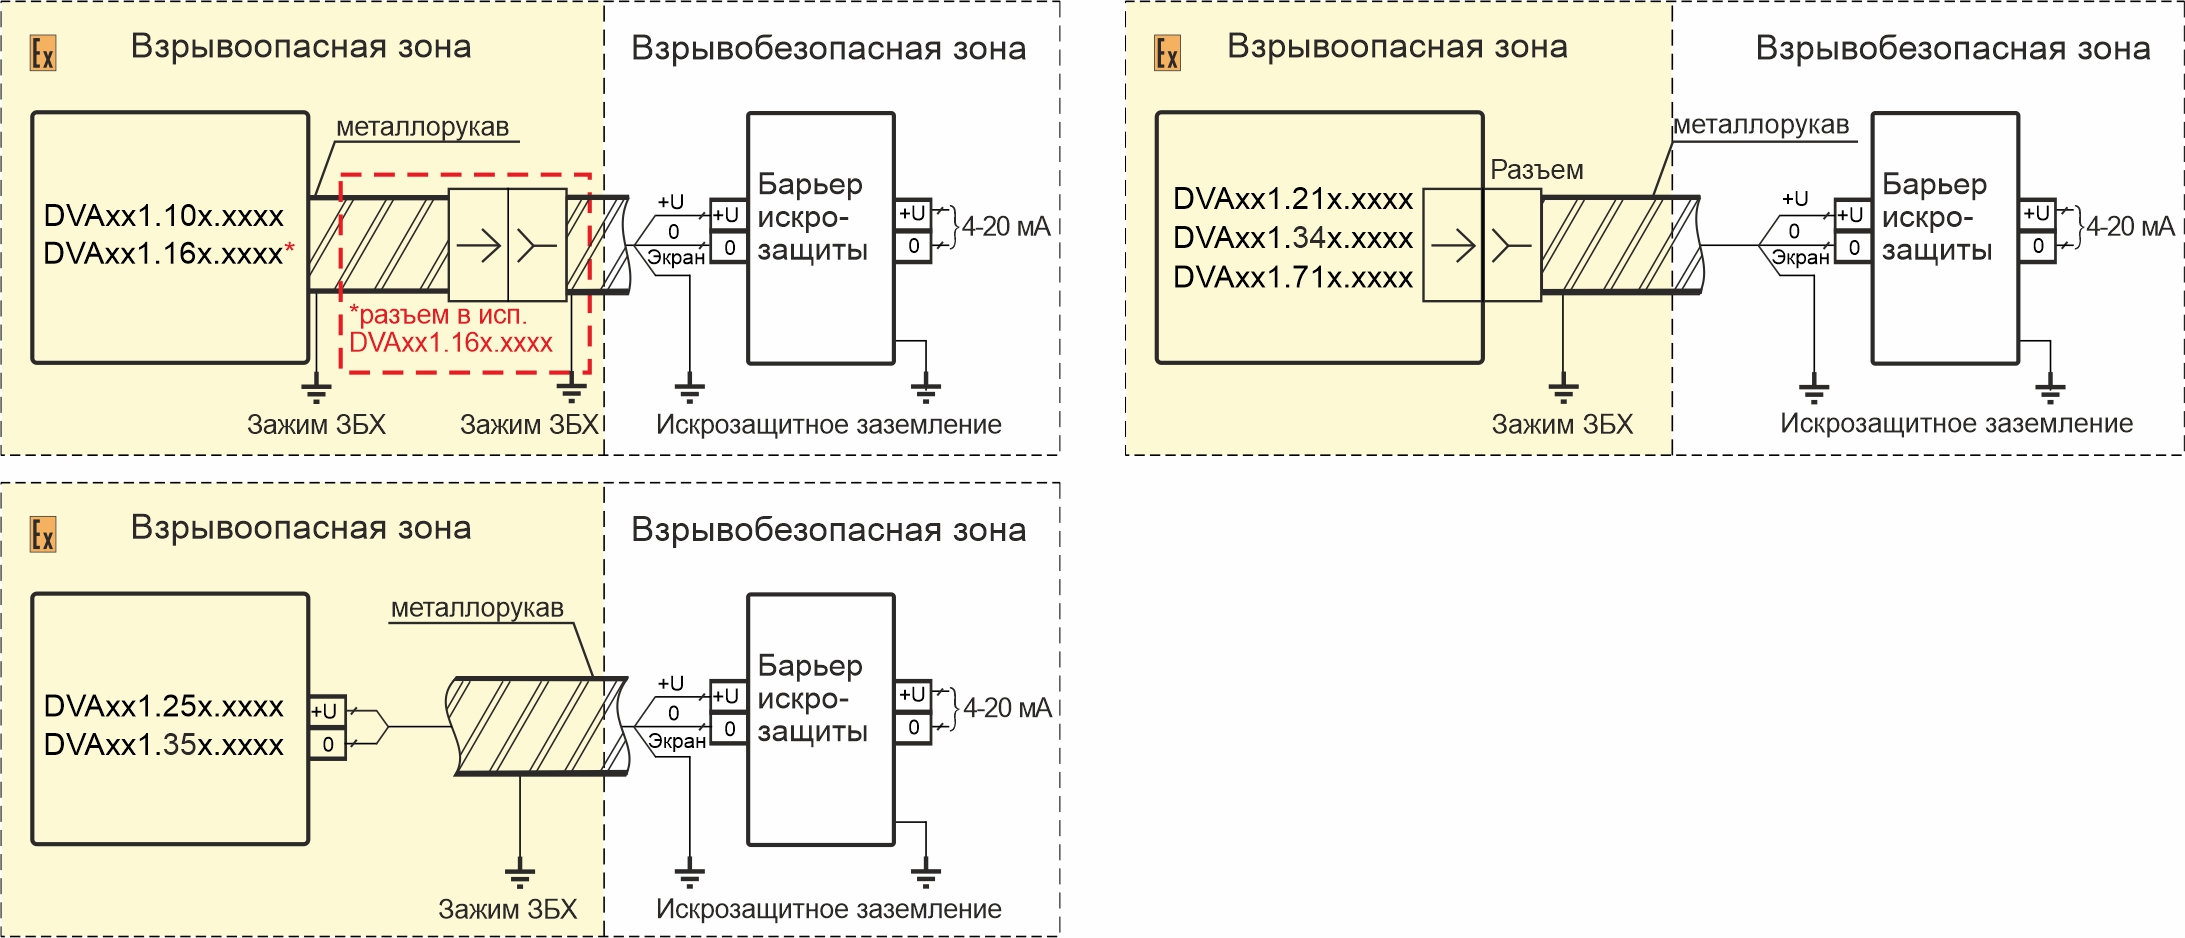 Схемы подключения вибропреобразователей DVA161.XXX